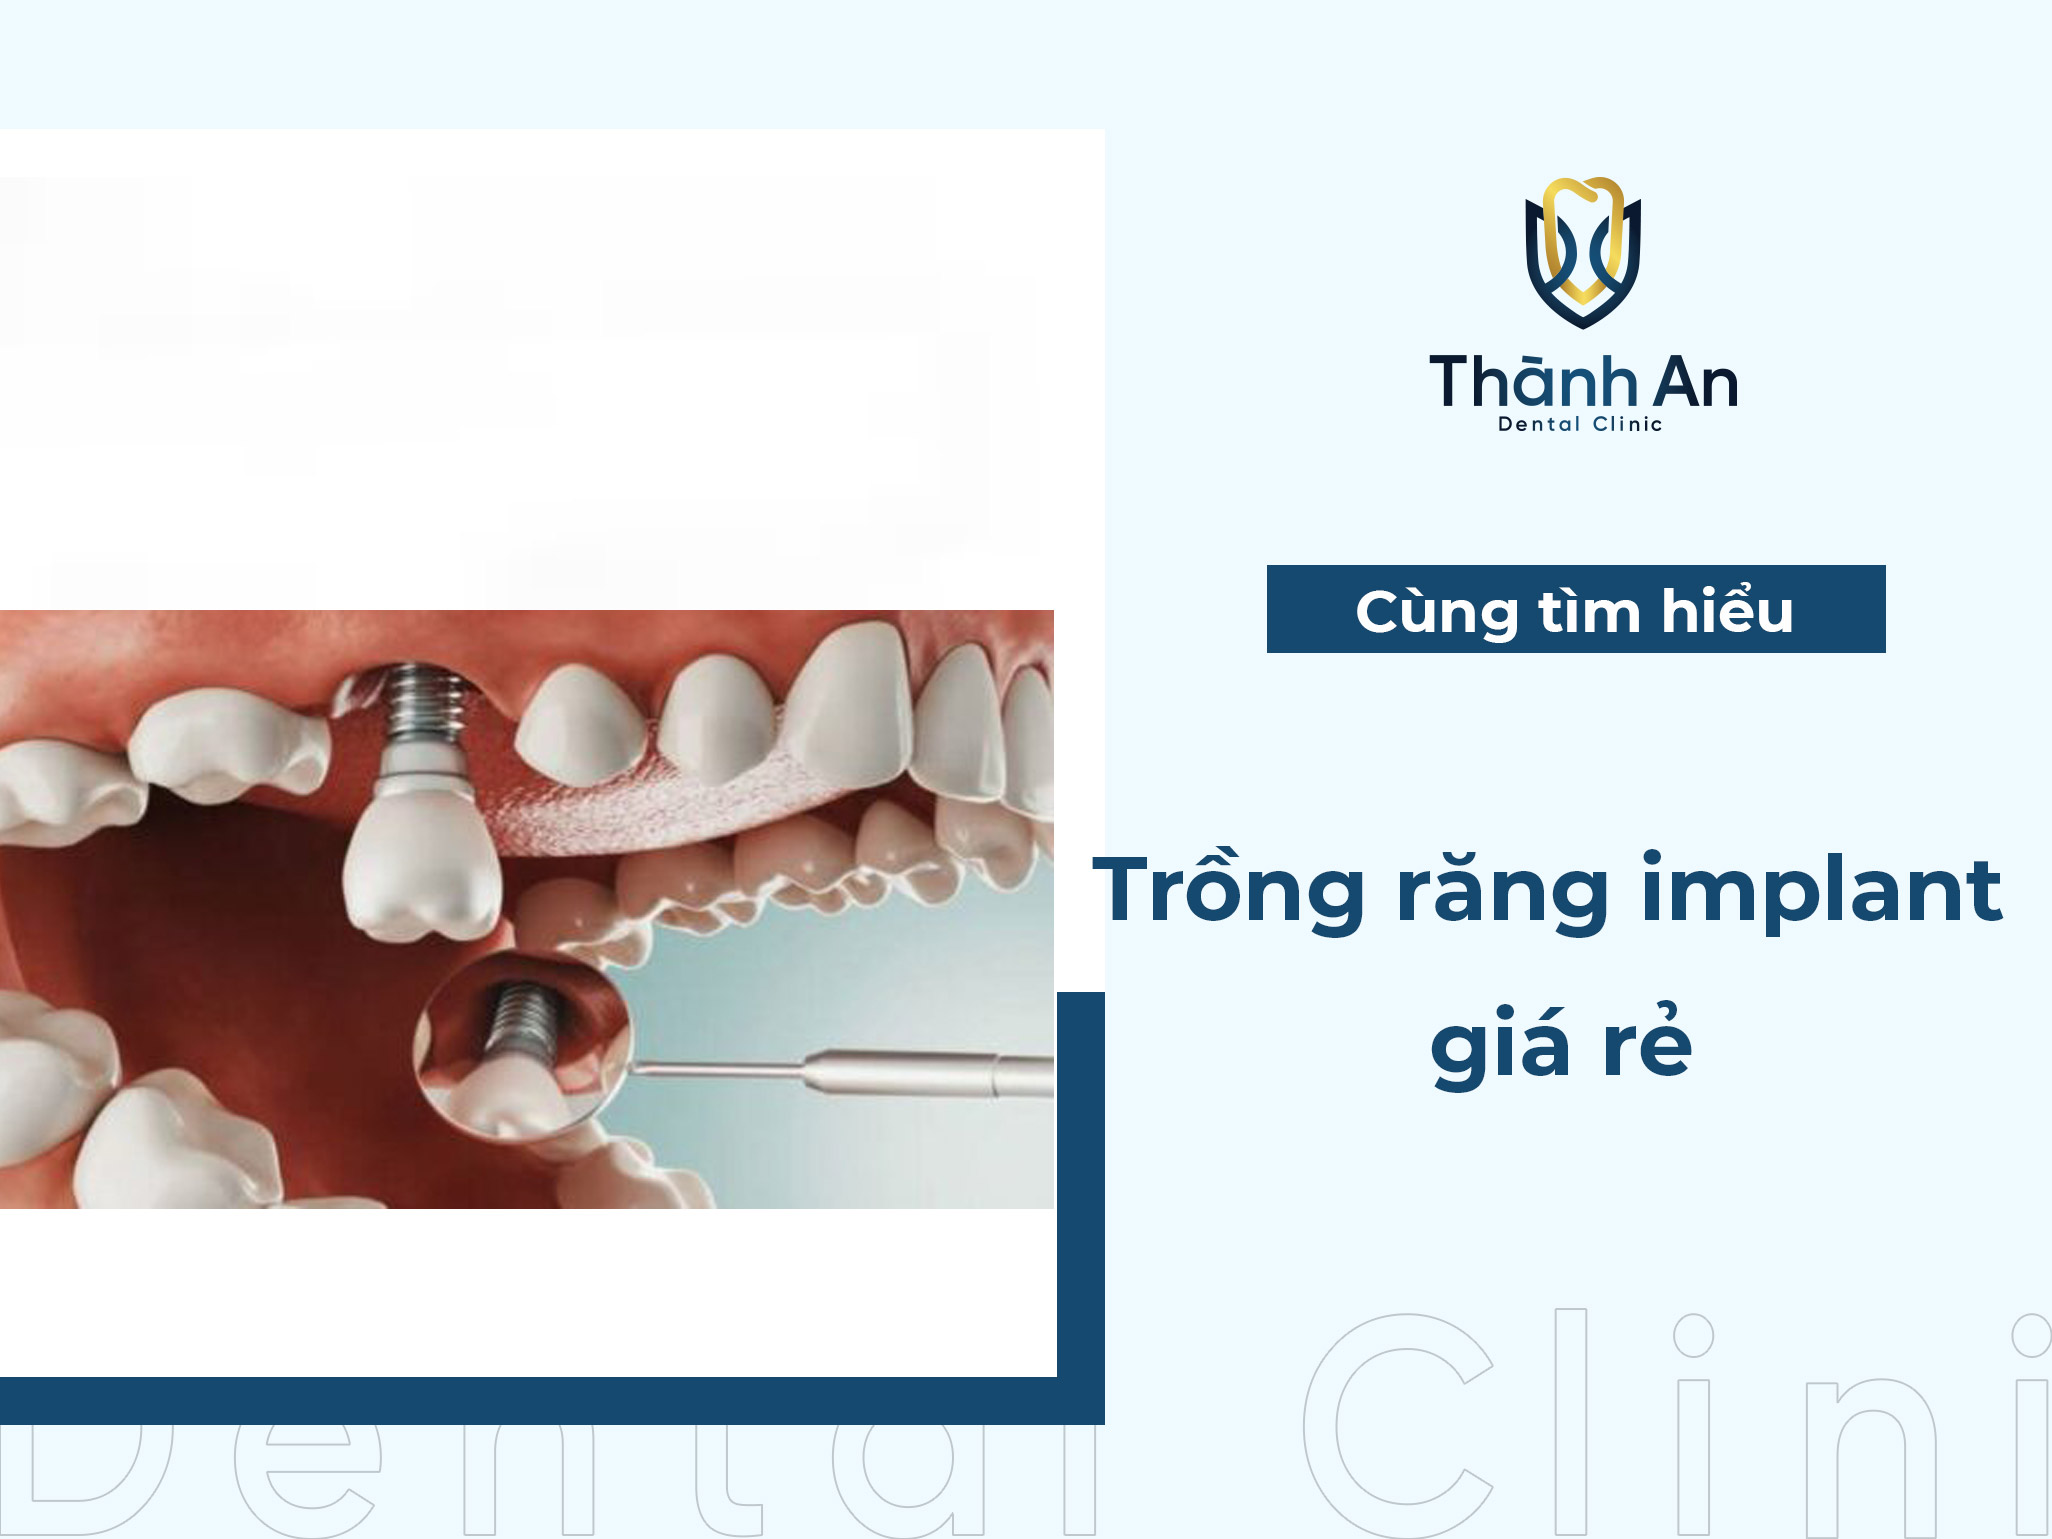 Trồng răng Implant giá rẻ, an toàn ở đâu Hà Nội?